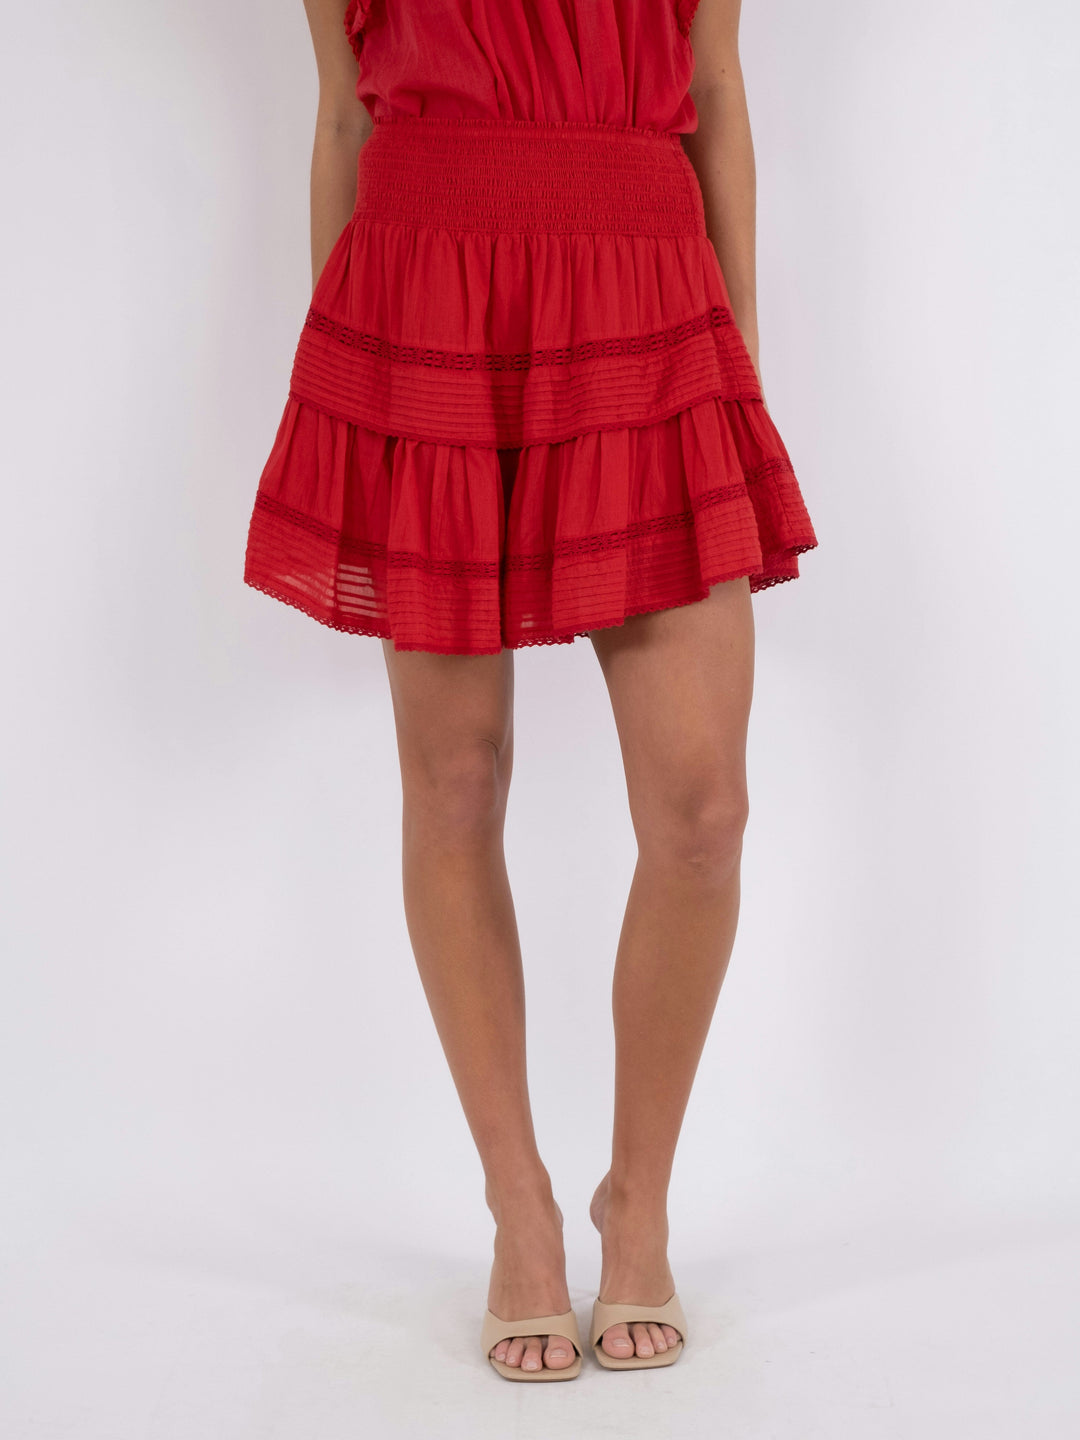 Neo Noir - Kenia S Voile Skirt - Red